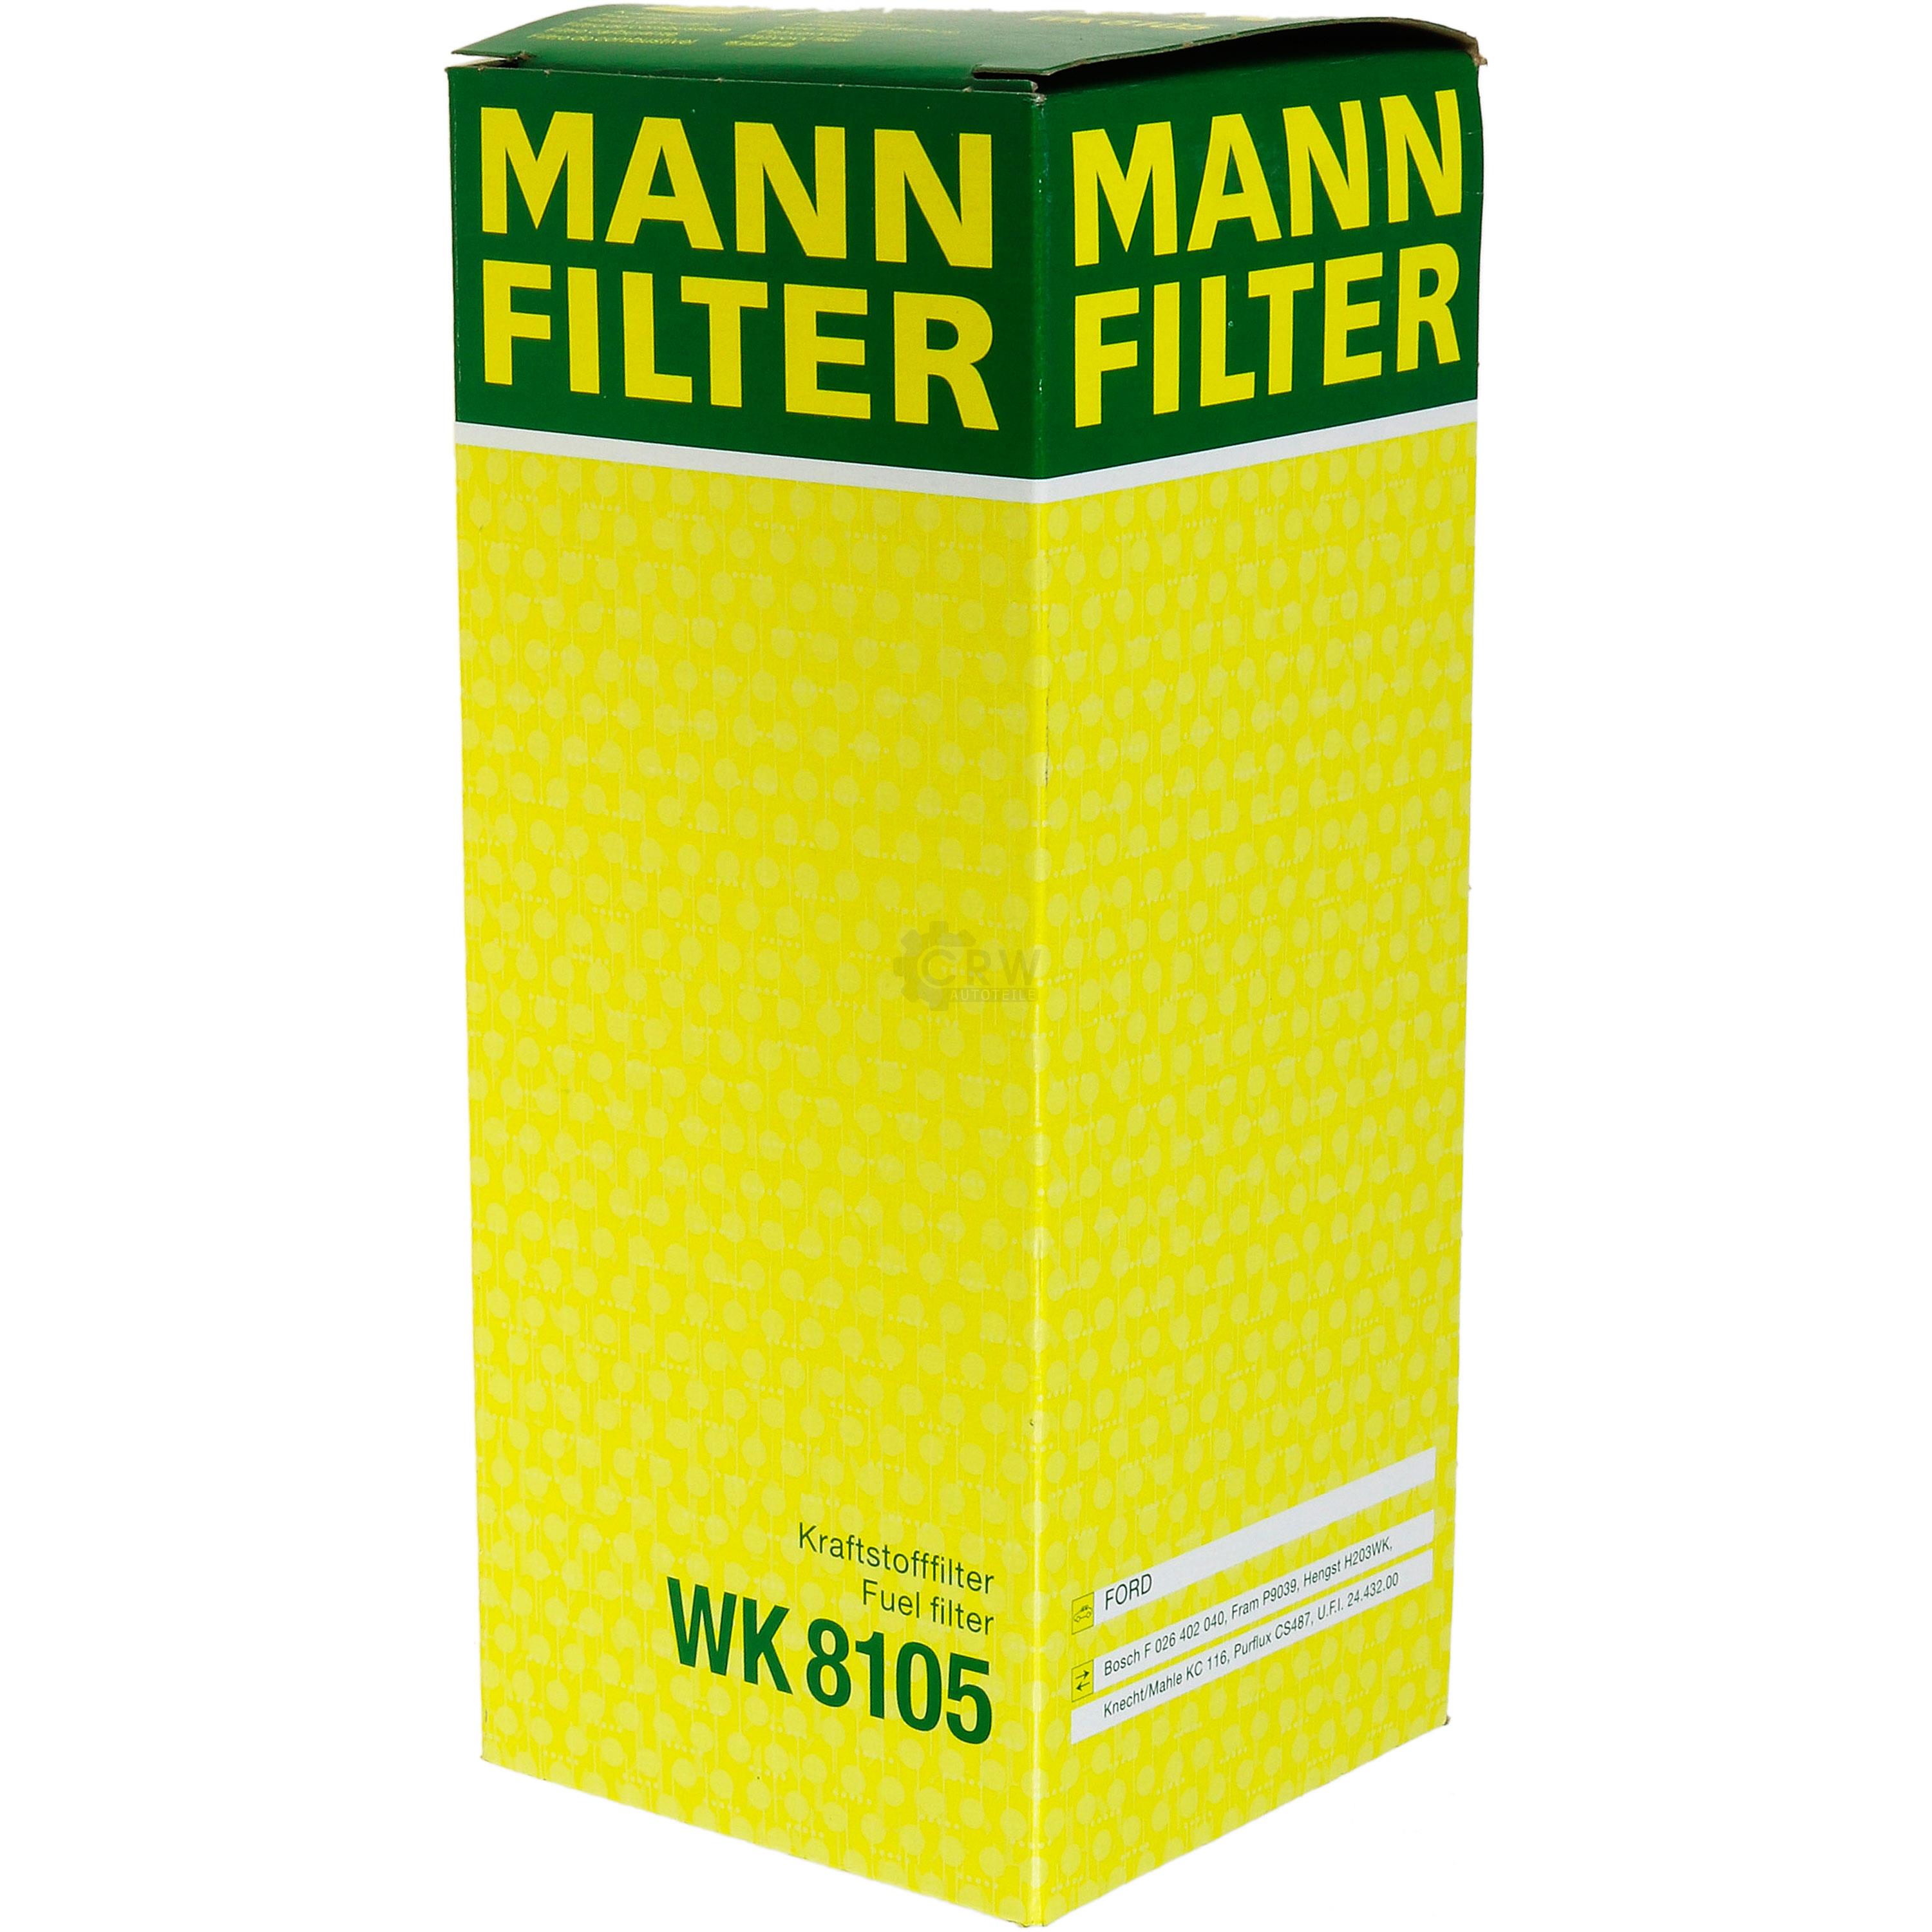 MANN-FILTER Kraftstofffilter WK 8105 Fuel Filter